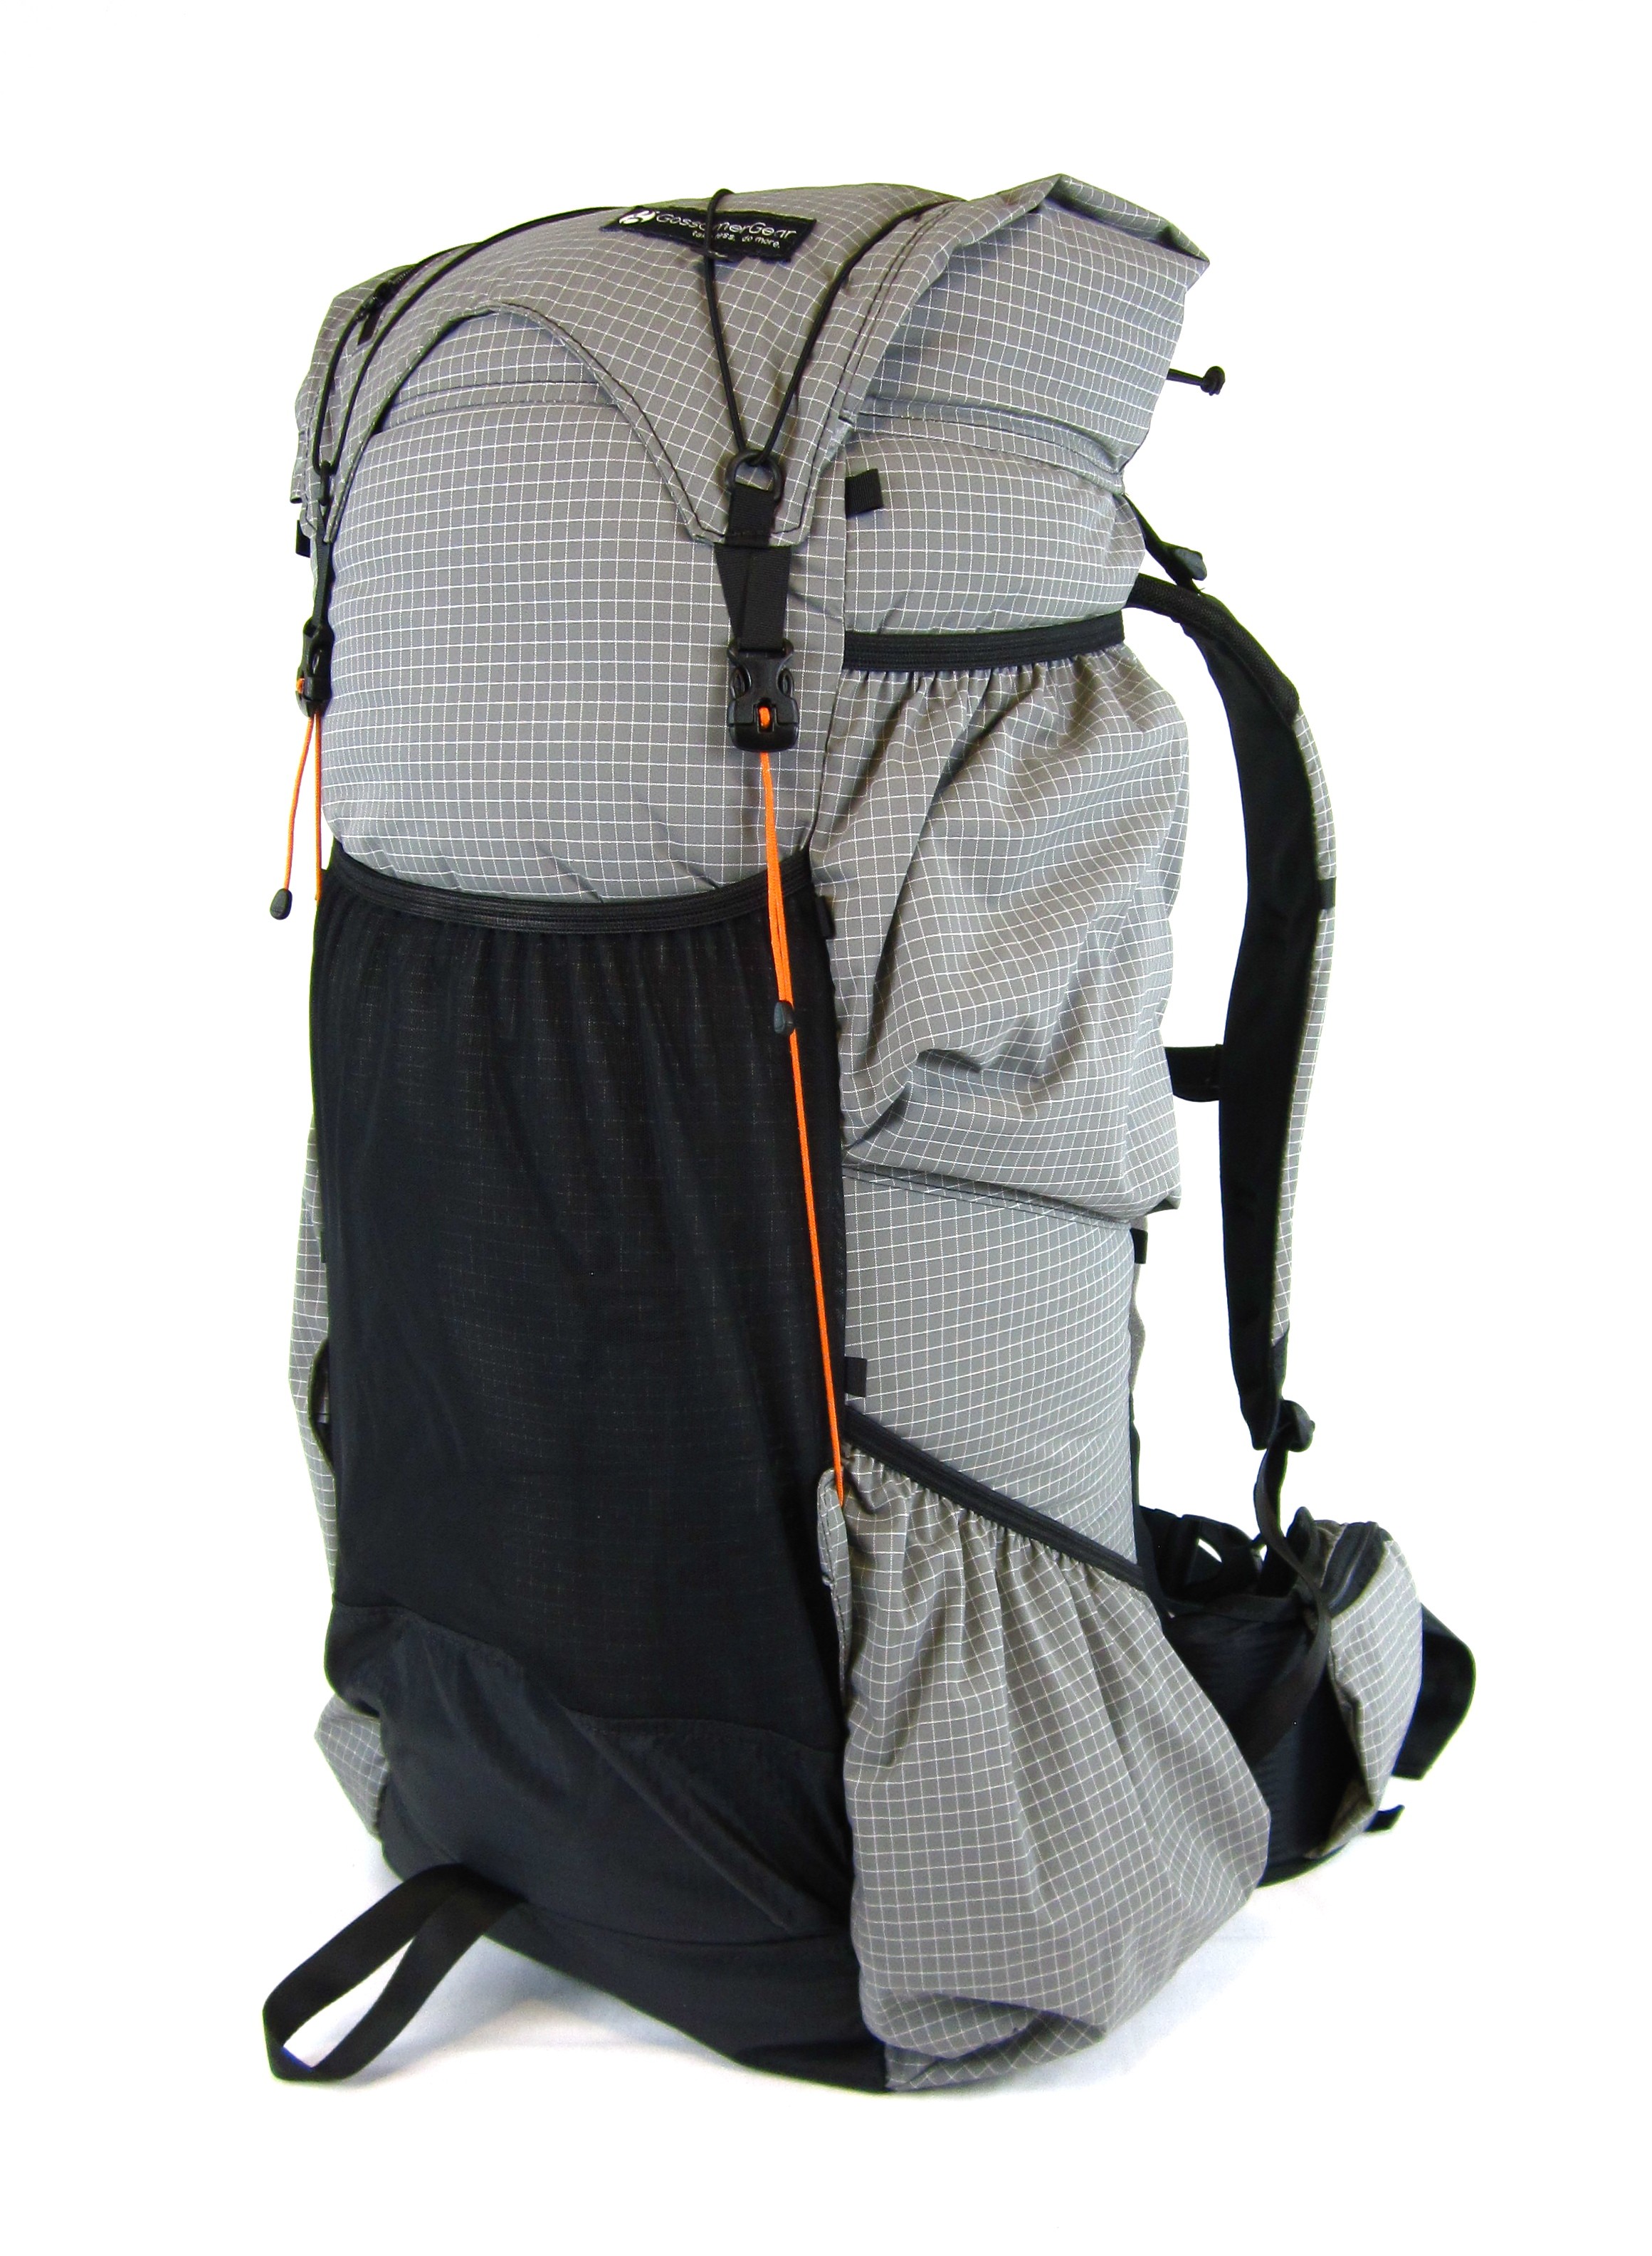 Rear of Gossamer Gear Mariposa Backpack